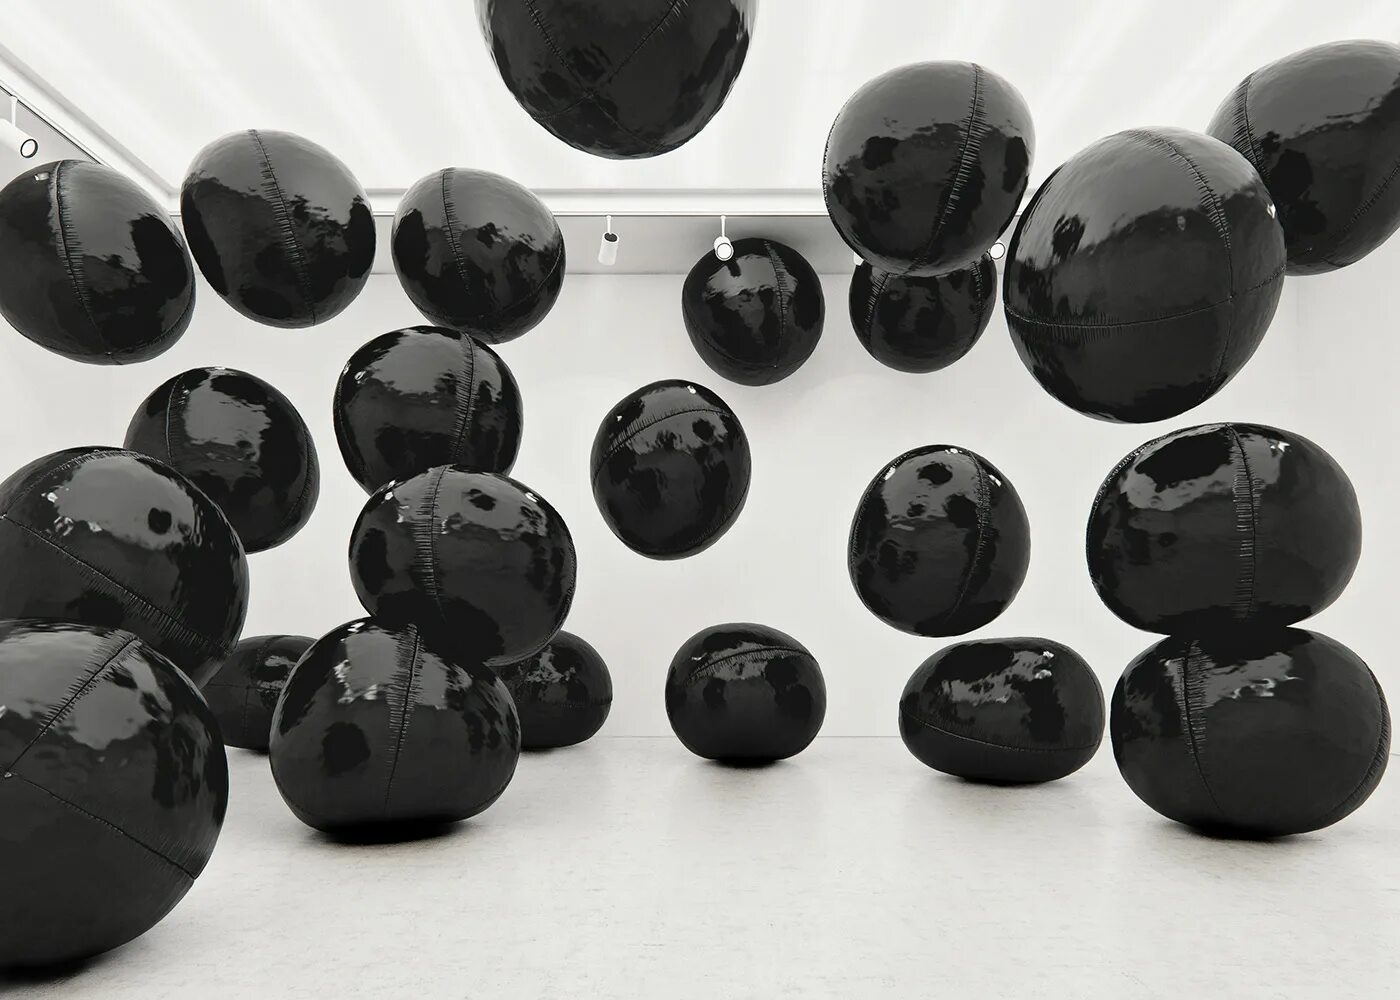 “Черный шар” (the Black Balloon), 2008. Черные воздушные шары. Черный матовый шарик. Черные шары круглые. Про черного шарика